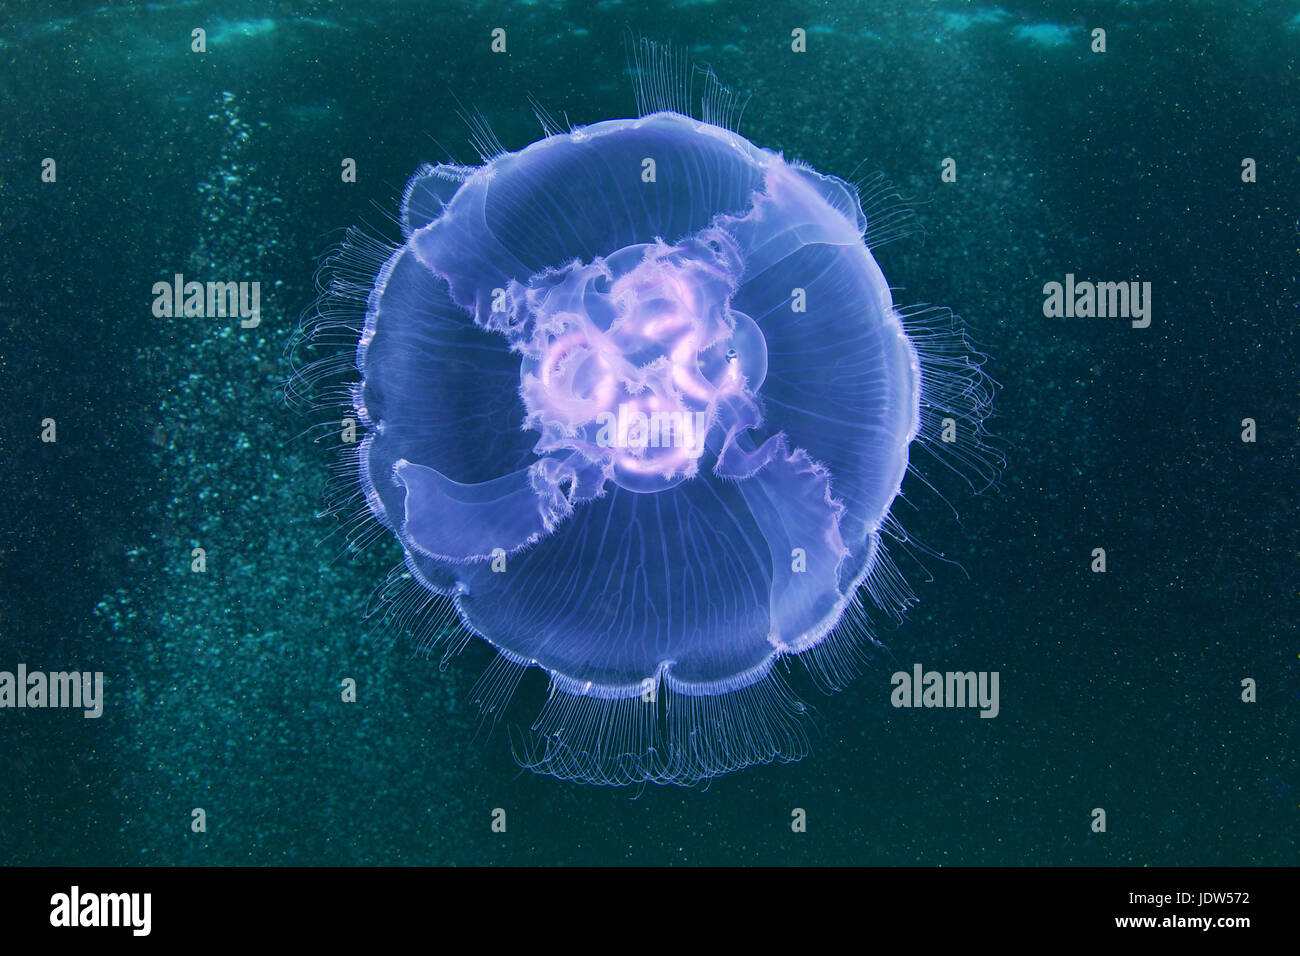 Aurelia aurita jellyfish Stock Photo